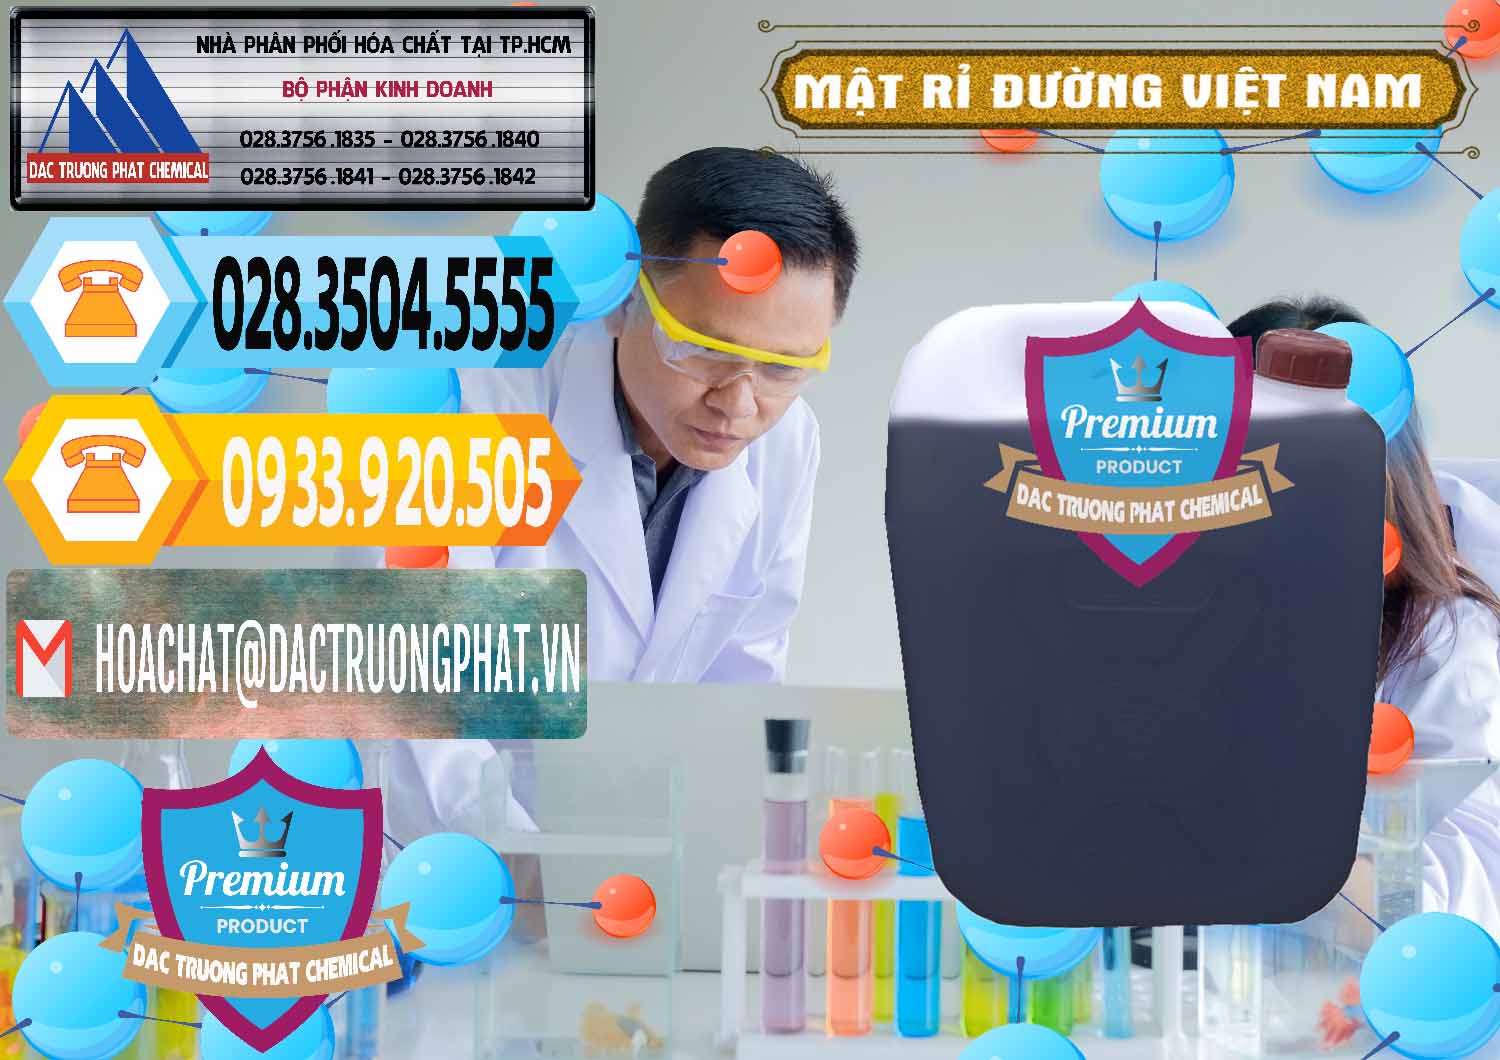 Cty chuyên phân phối ( bán ) Mật Rỉ Đường Việt Nam - 0306 - Nơi phân phối và cung ứng hóa chất tại TP.HCM - hoachattayrua.net